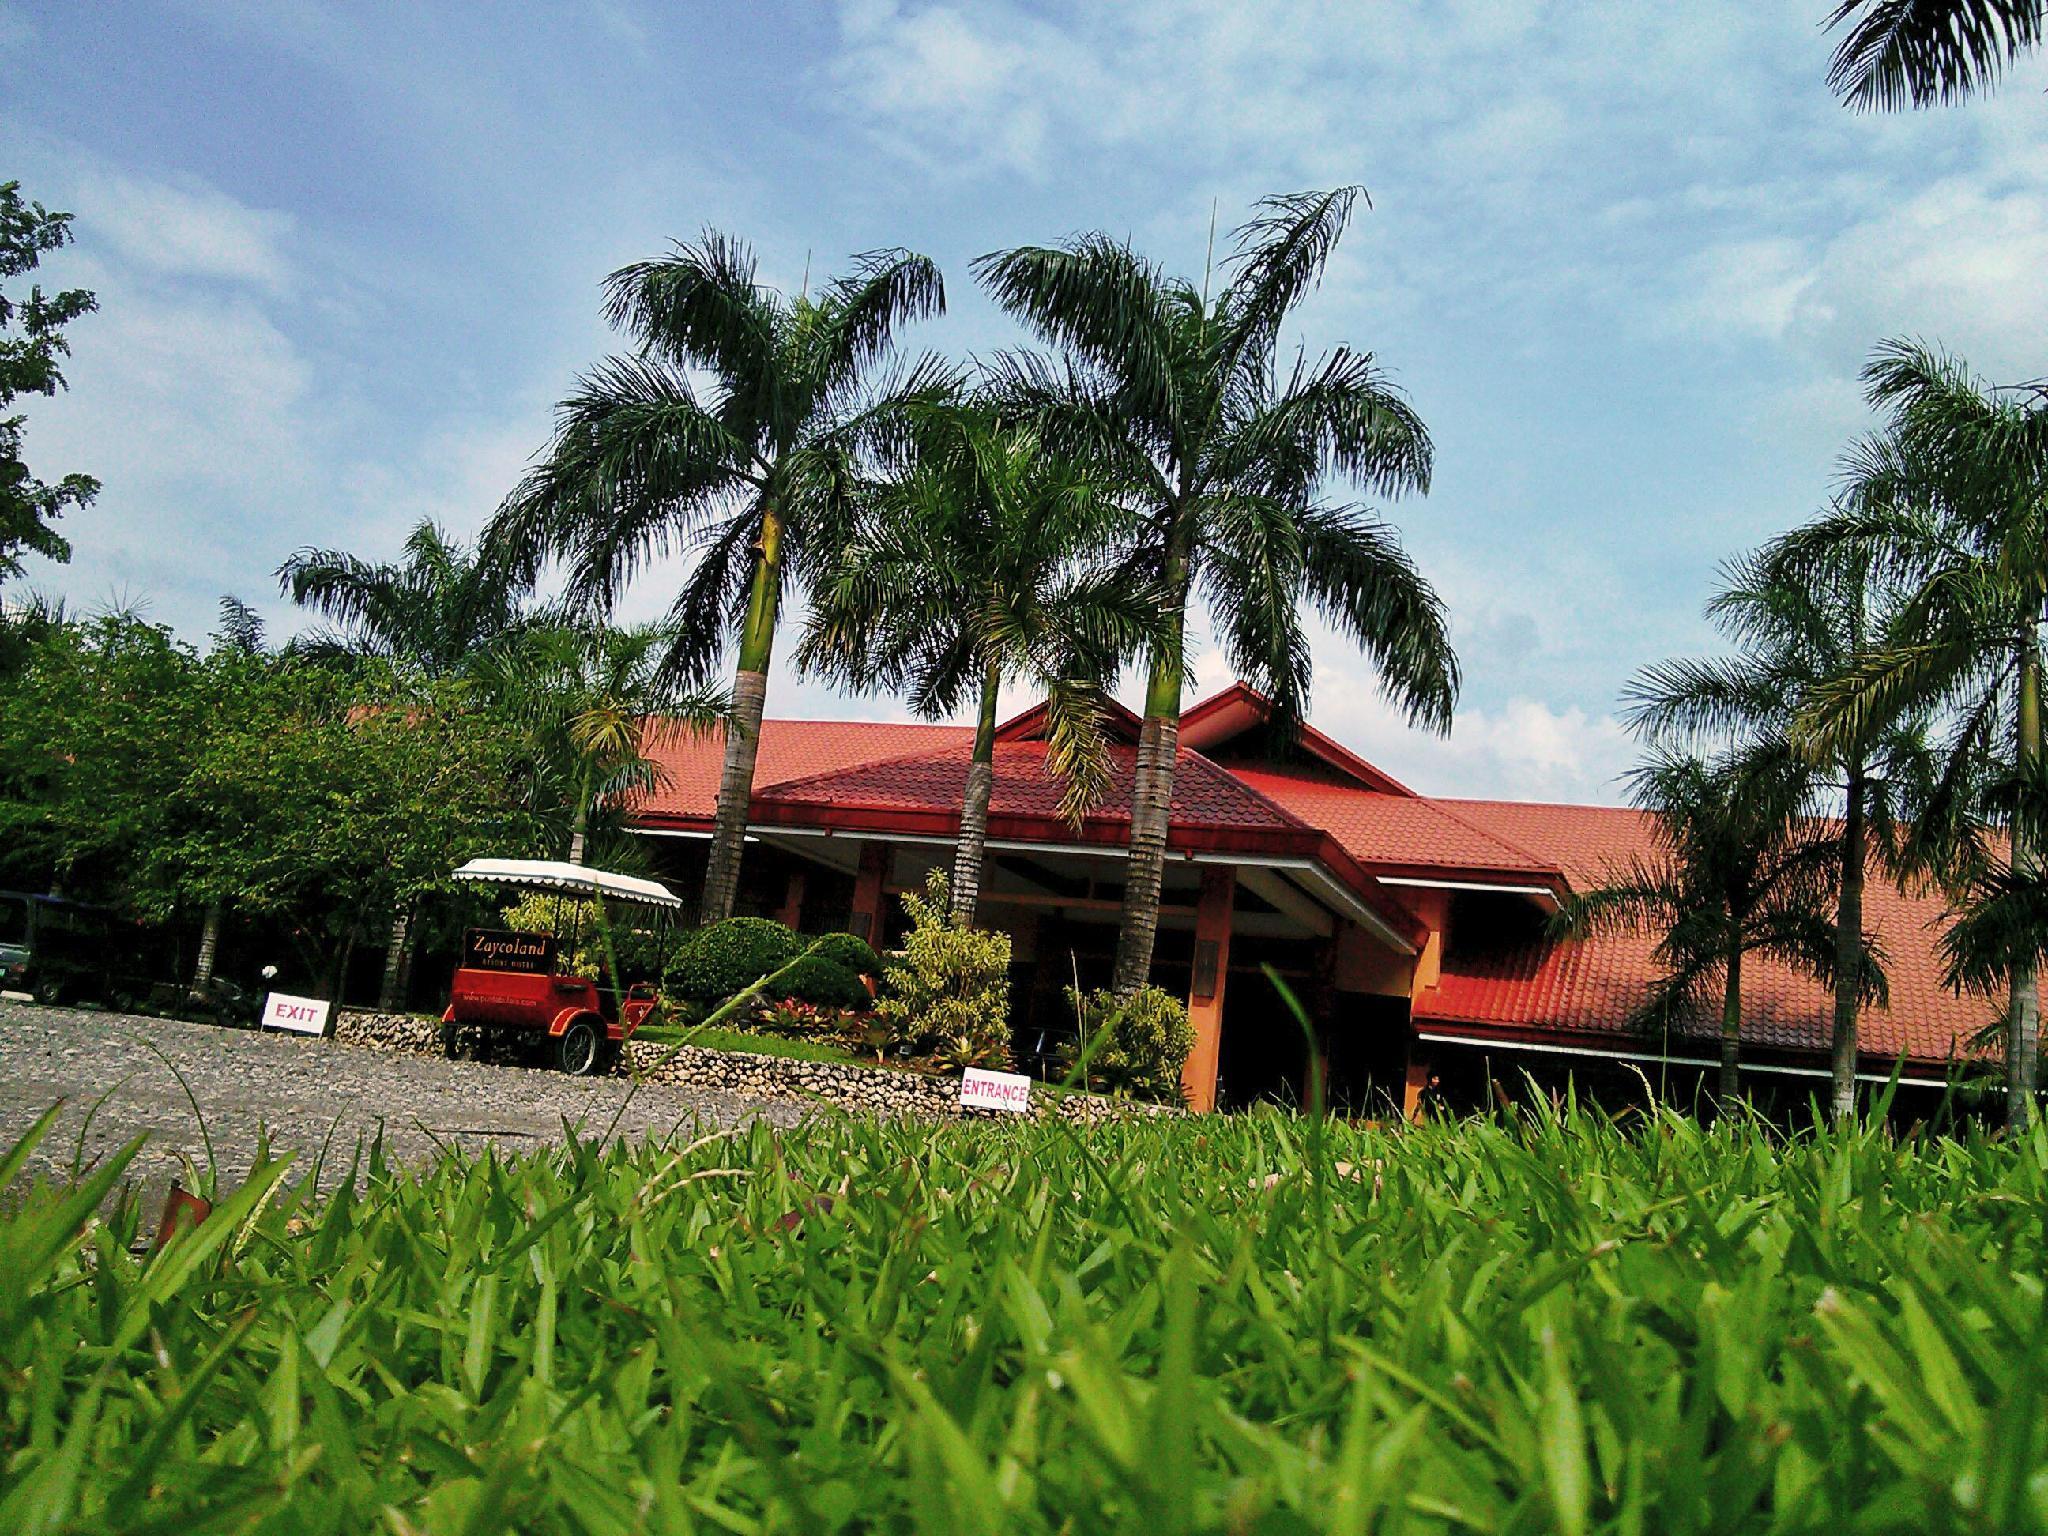 Zaycoland Resort And Hotel - Kabankalan